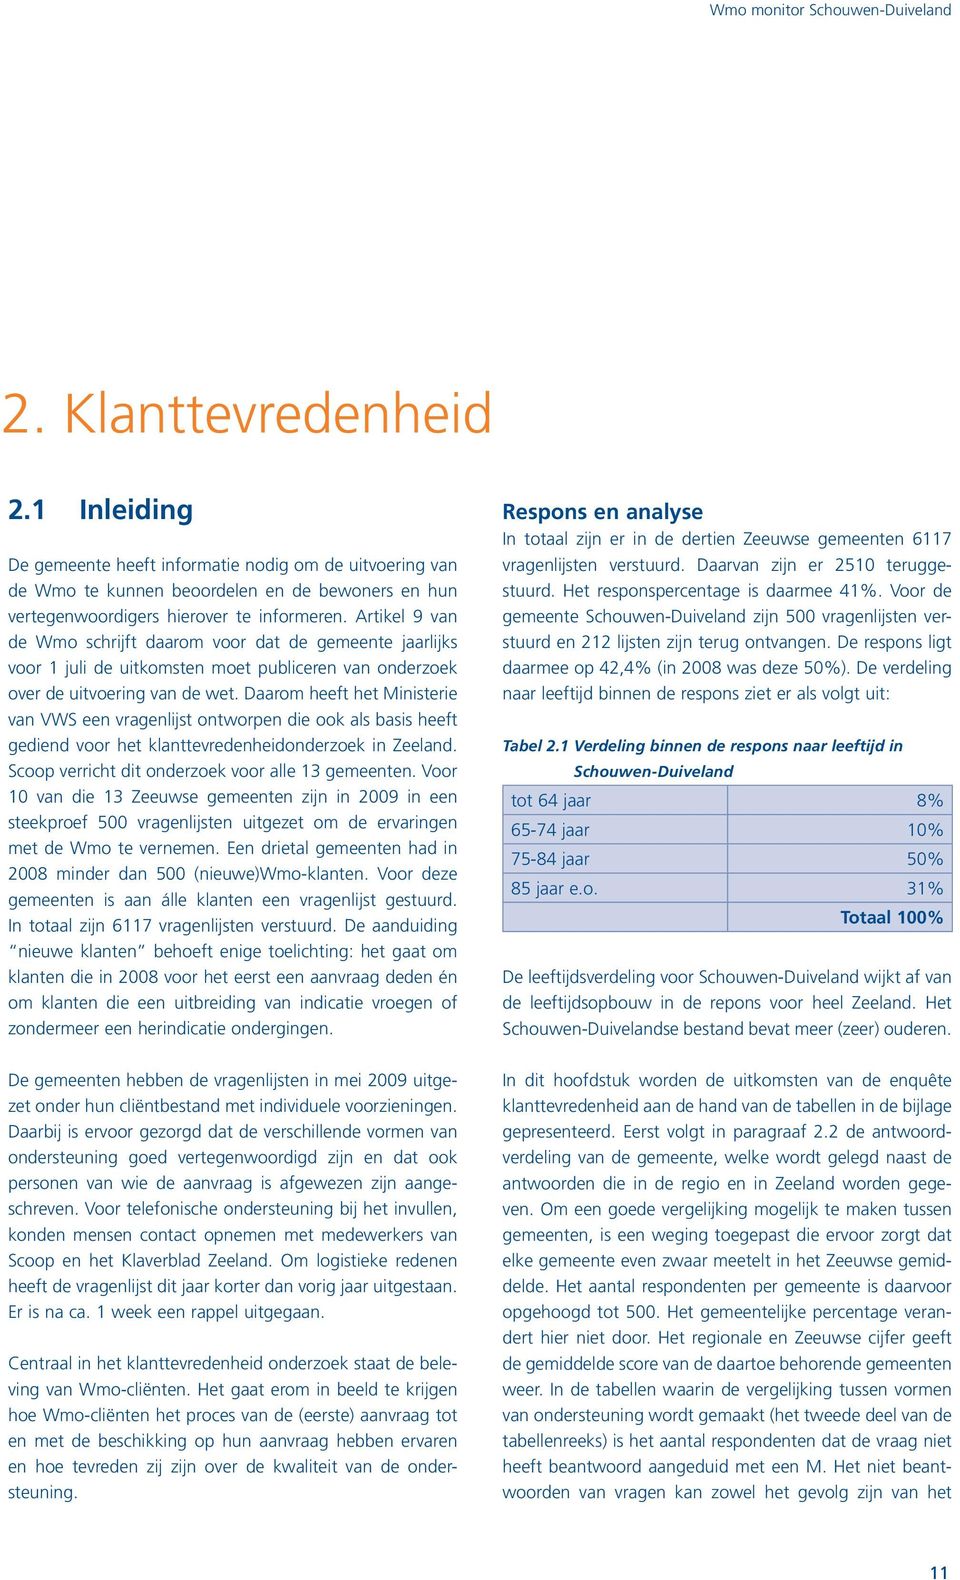 Daarom heeft het Ministerie van VWS een vragenlijst ontworpen die ook als basis heeft gediend voor het klanttevredenheidonderzoek in Zeeland. Scoop verricht dit onderzoek voor alle 13 gemeenten.